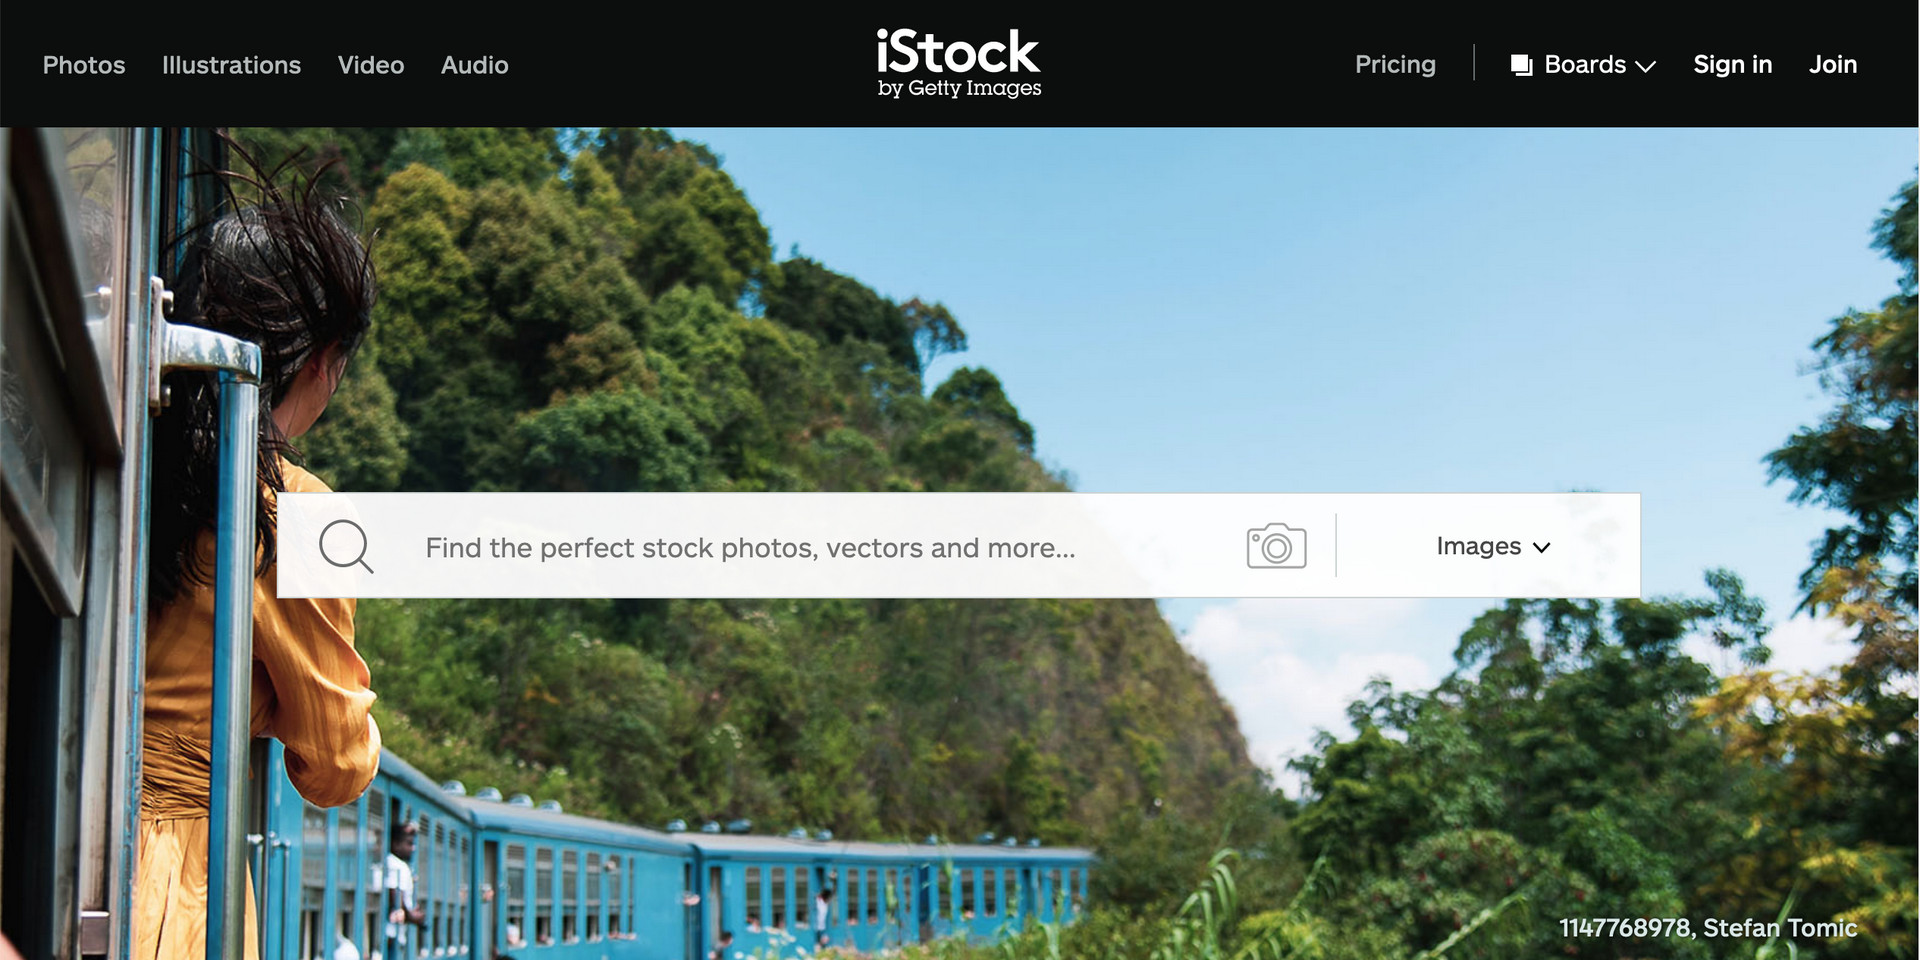 iStock website